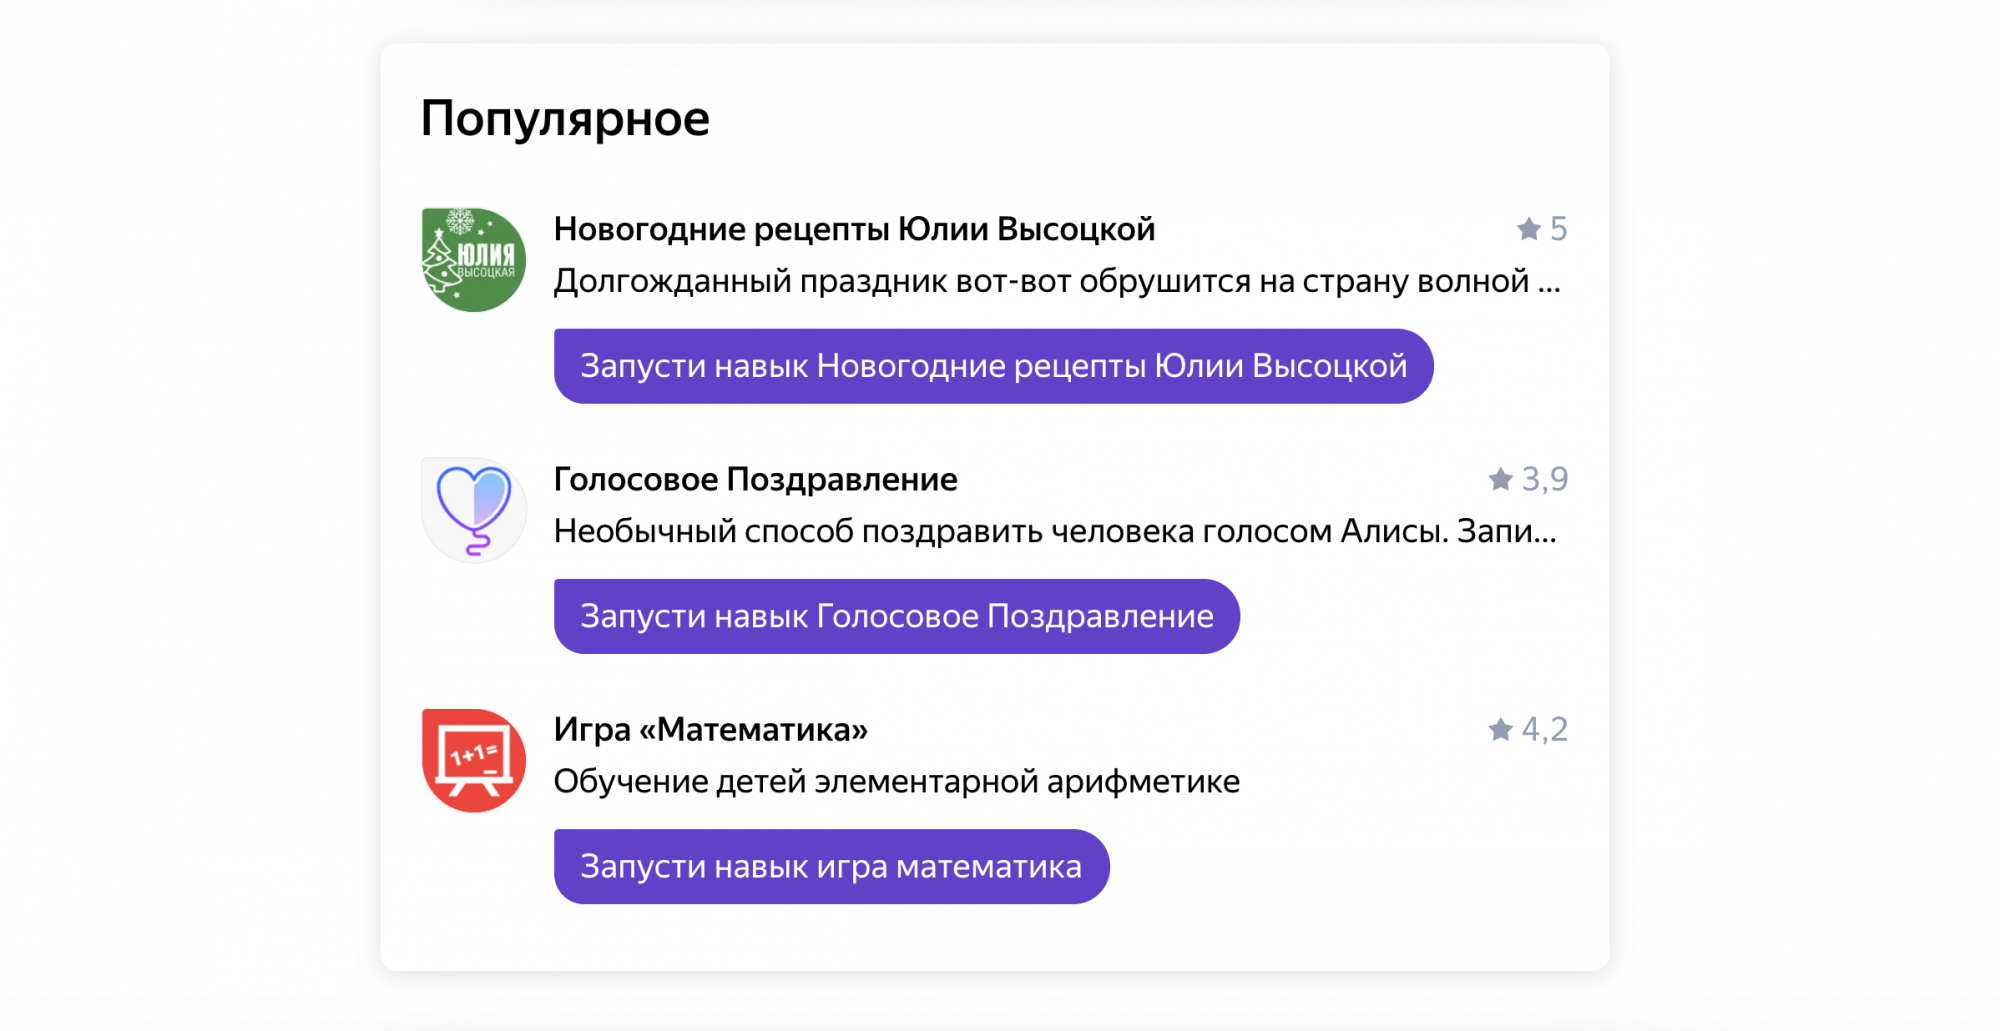 Яндекс обновил каталог Алисы